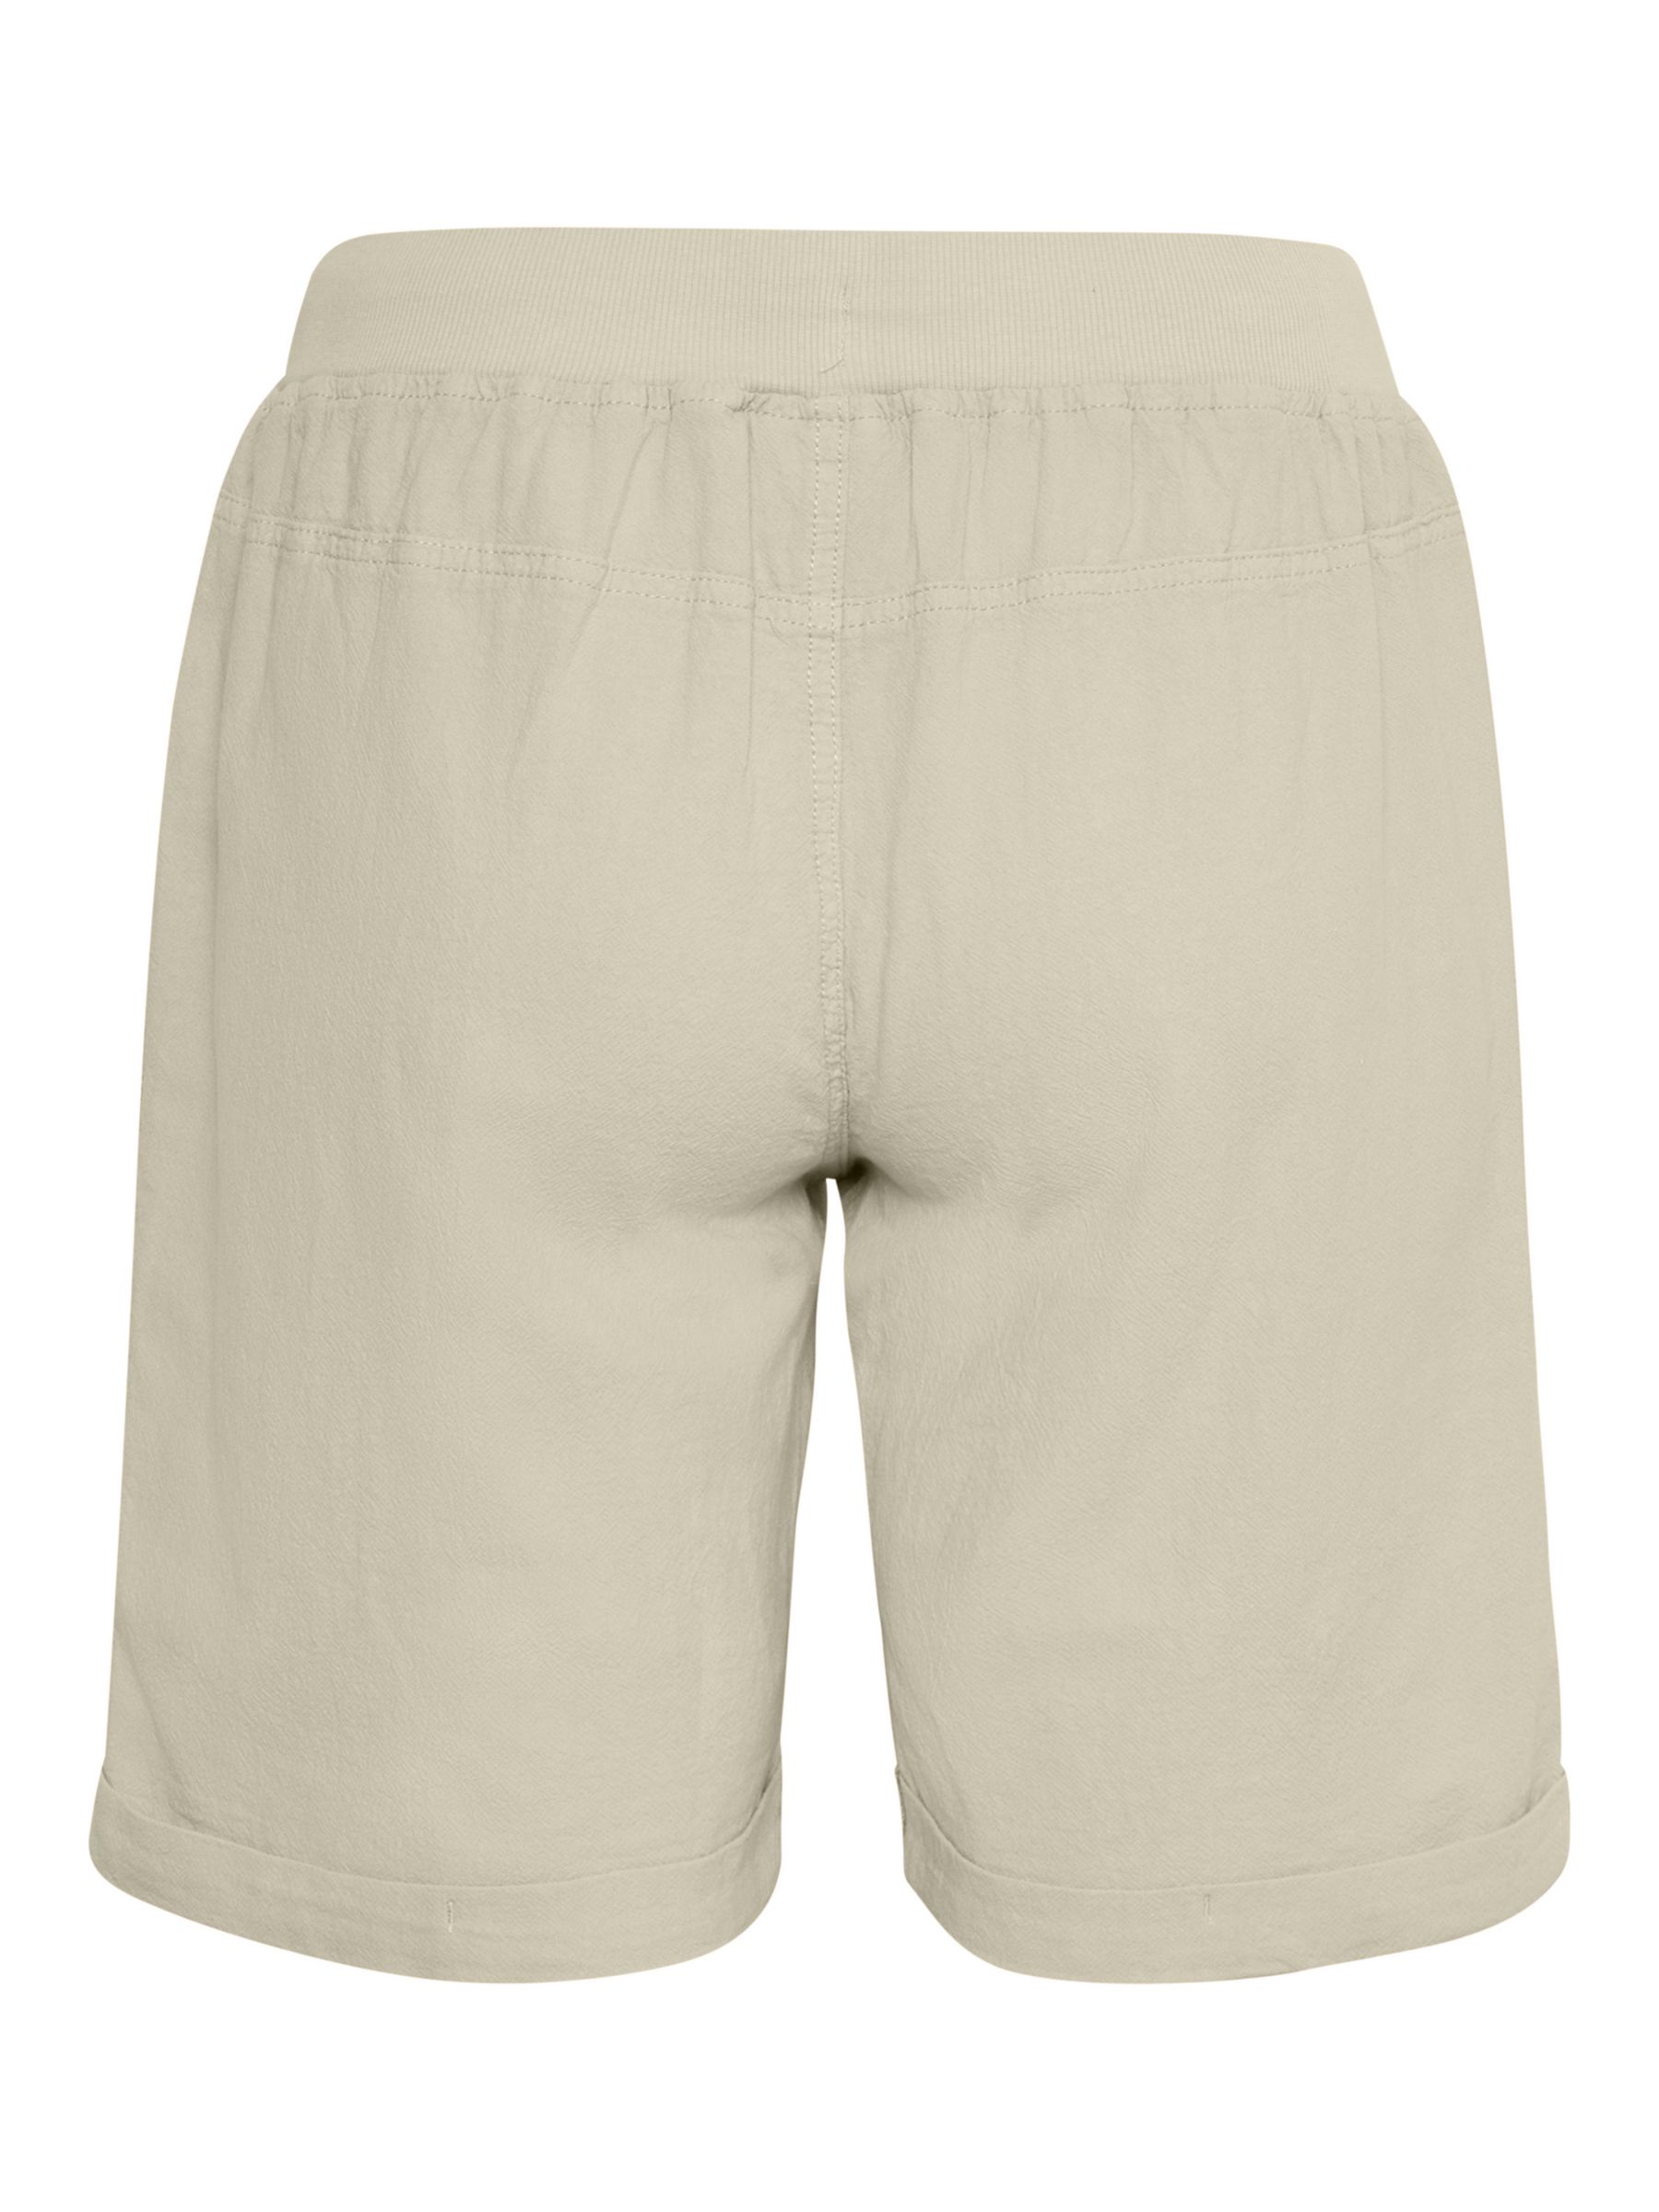 KAFFE Naya Elastic Waist Cotton Shorts, Seagrass, 14